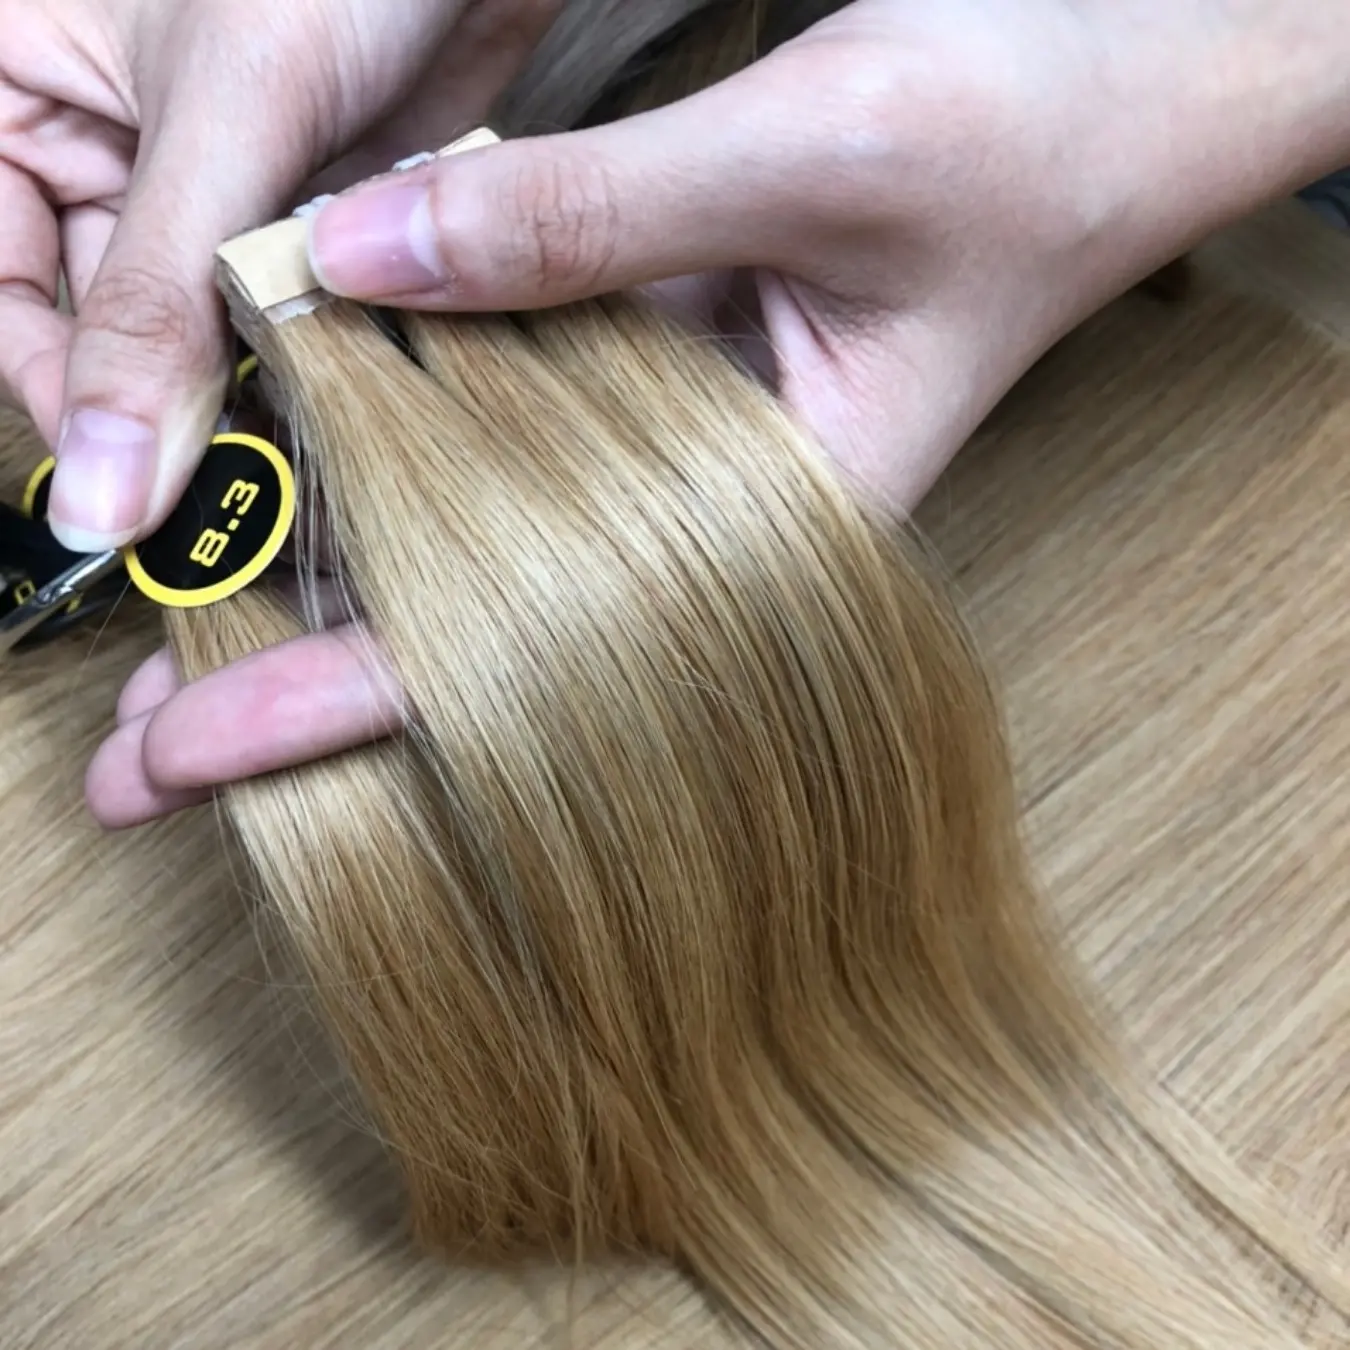 मानव बाल एक्सटेंशन में लंबे समय तक चलने वाला प्रीमियम बोन स्ट्रेट टेप, एक दाता शुद्ध वियतनामी कच्चे बाल क्यूटिकल संरेखित बाल